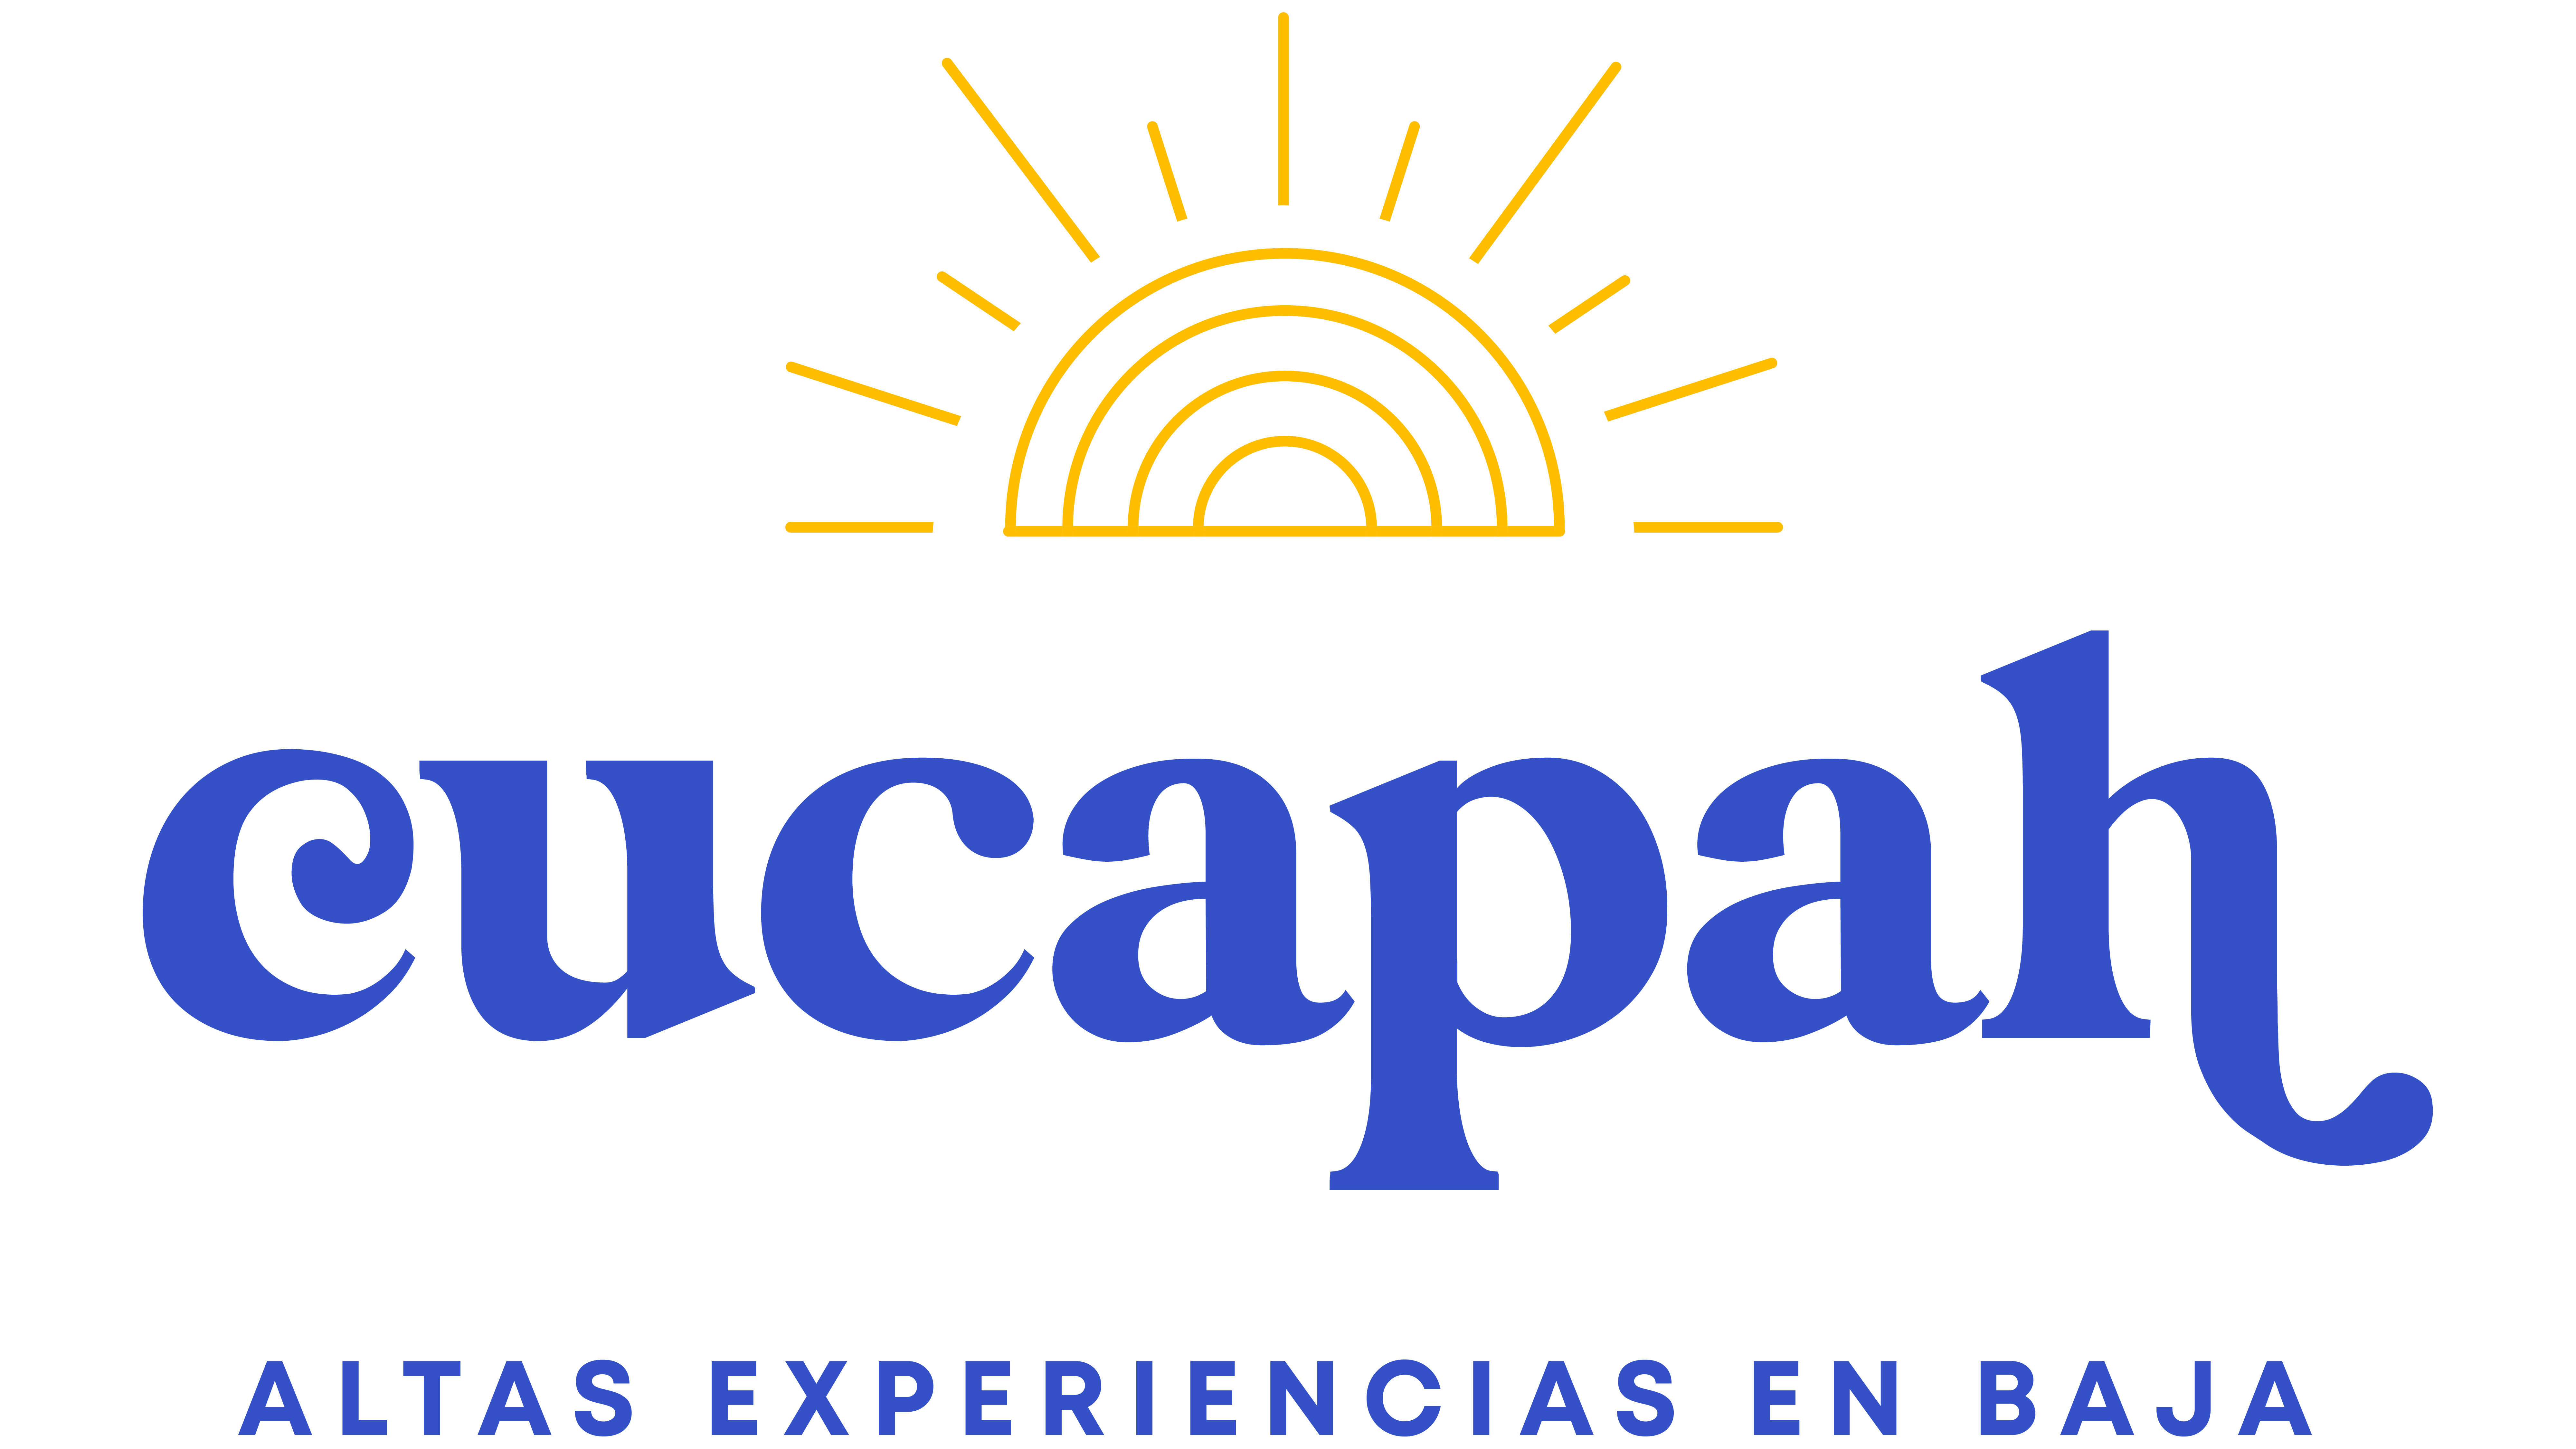 Tours y Experiencias en Baja California